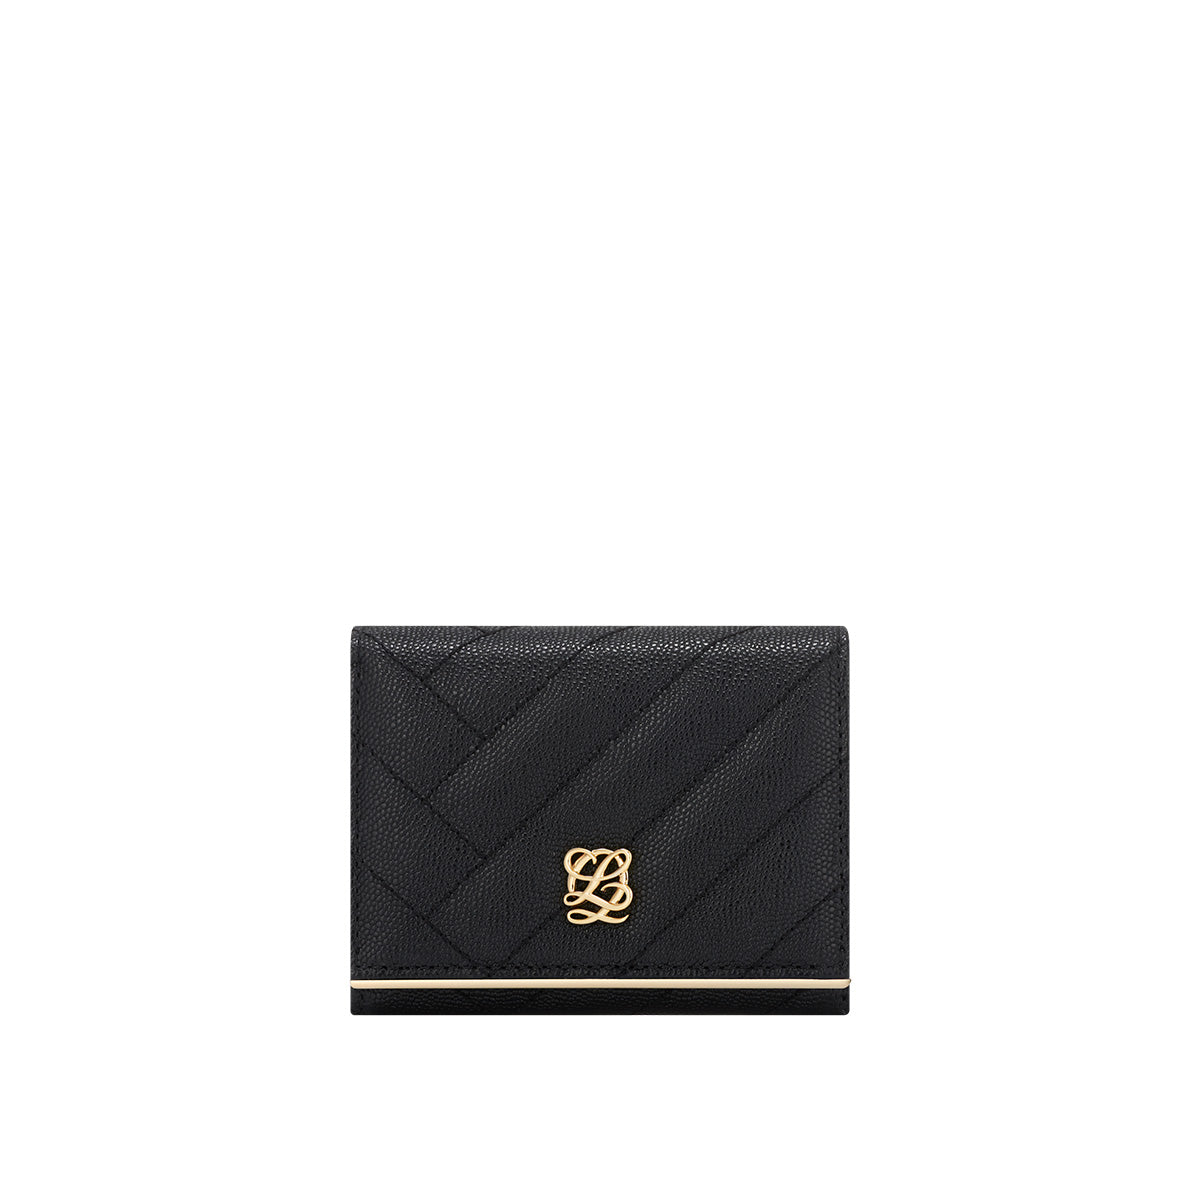 Shop Louis Quatorze Street Style Leather Logo Folding Wallets by K